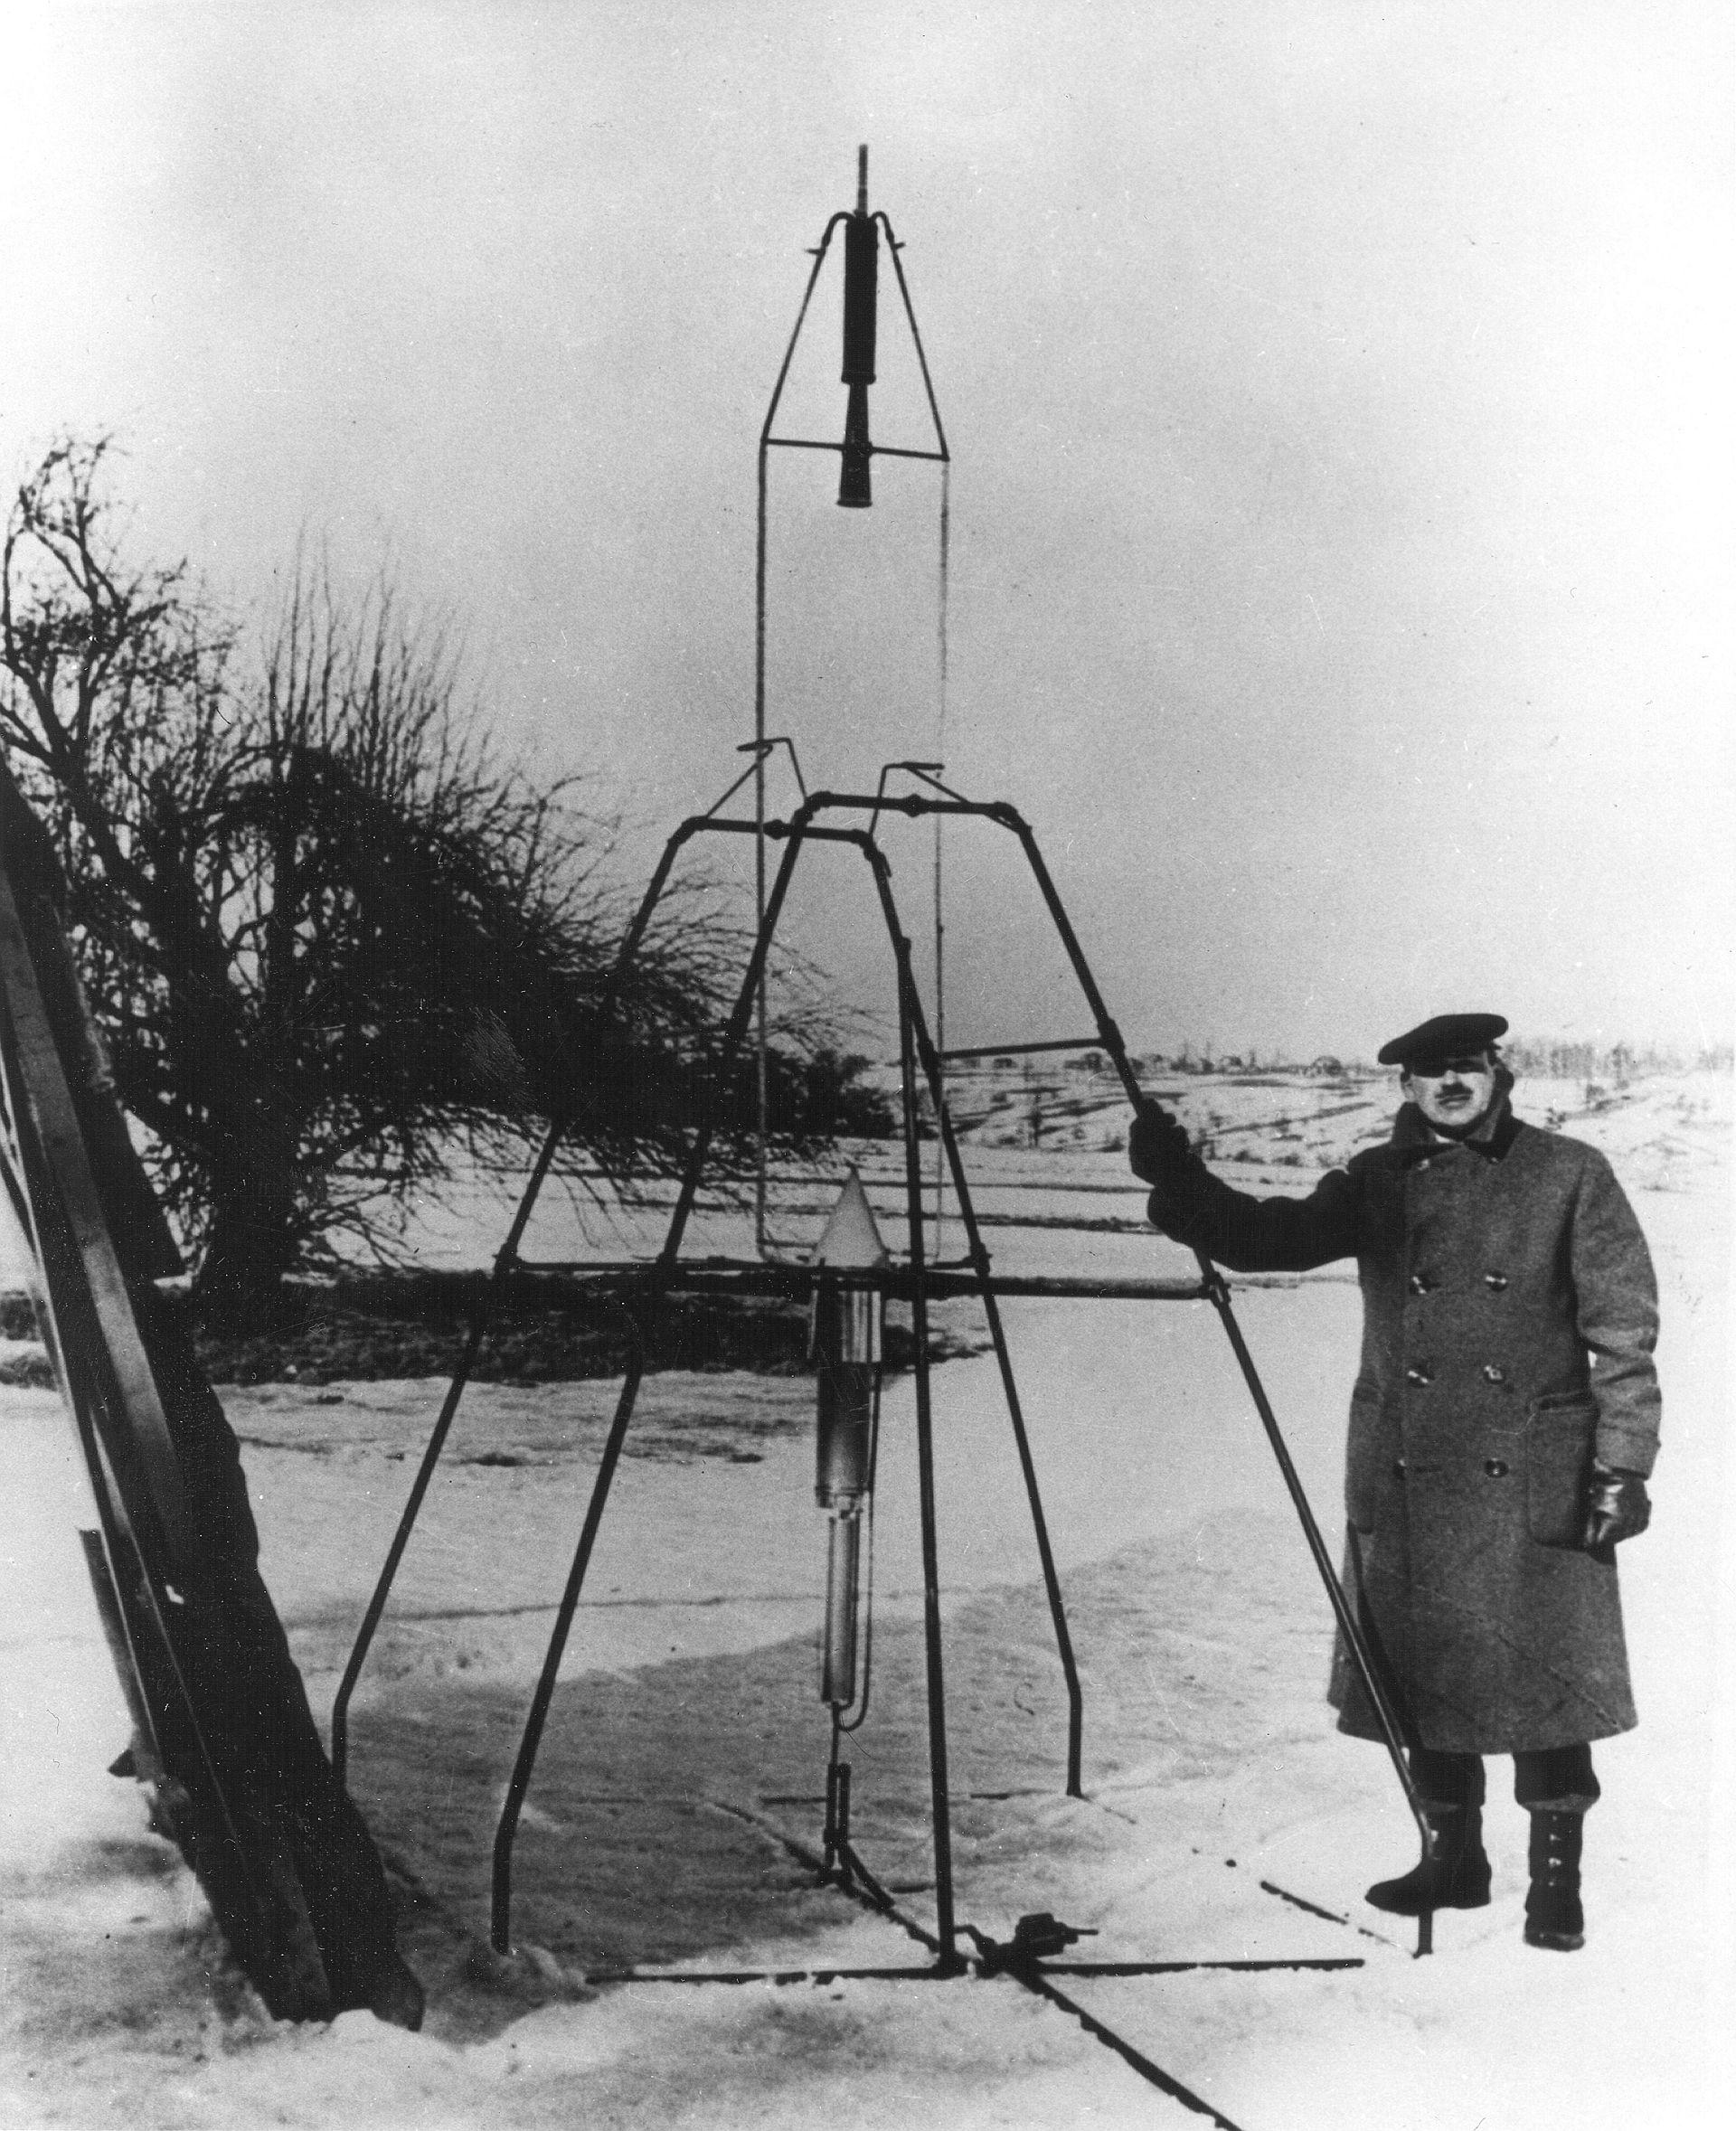 Robert Goddard and his 1926 rocket